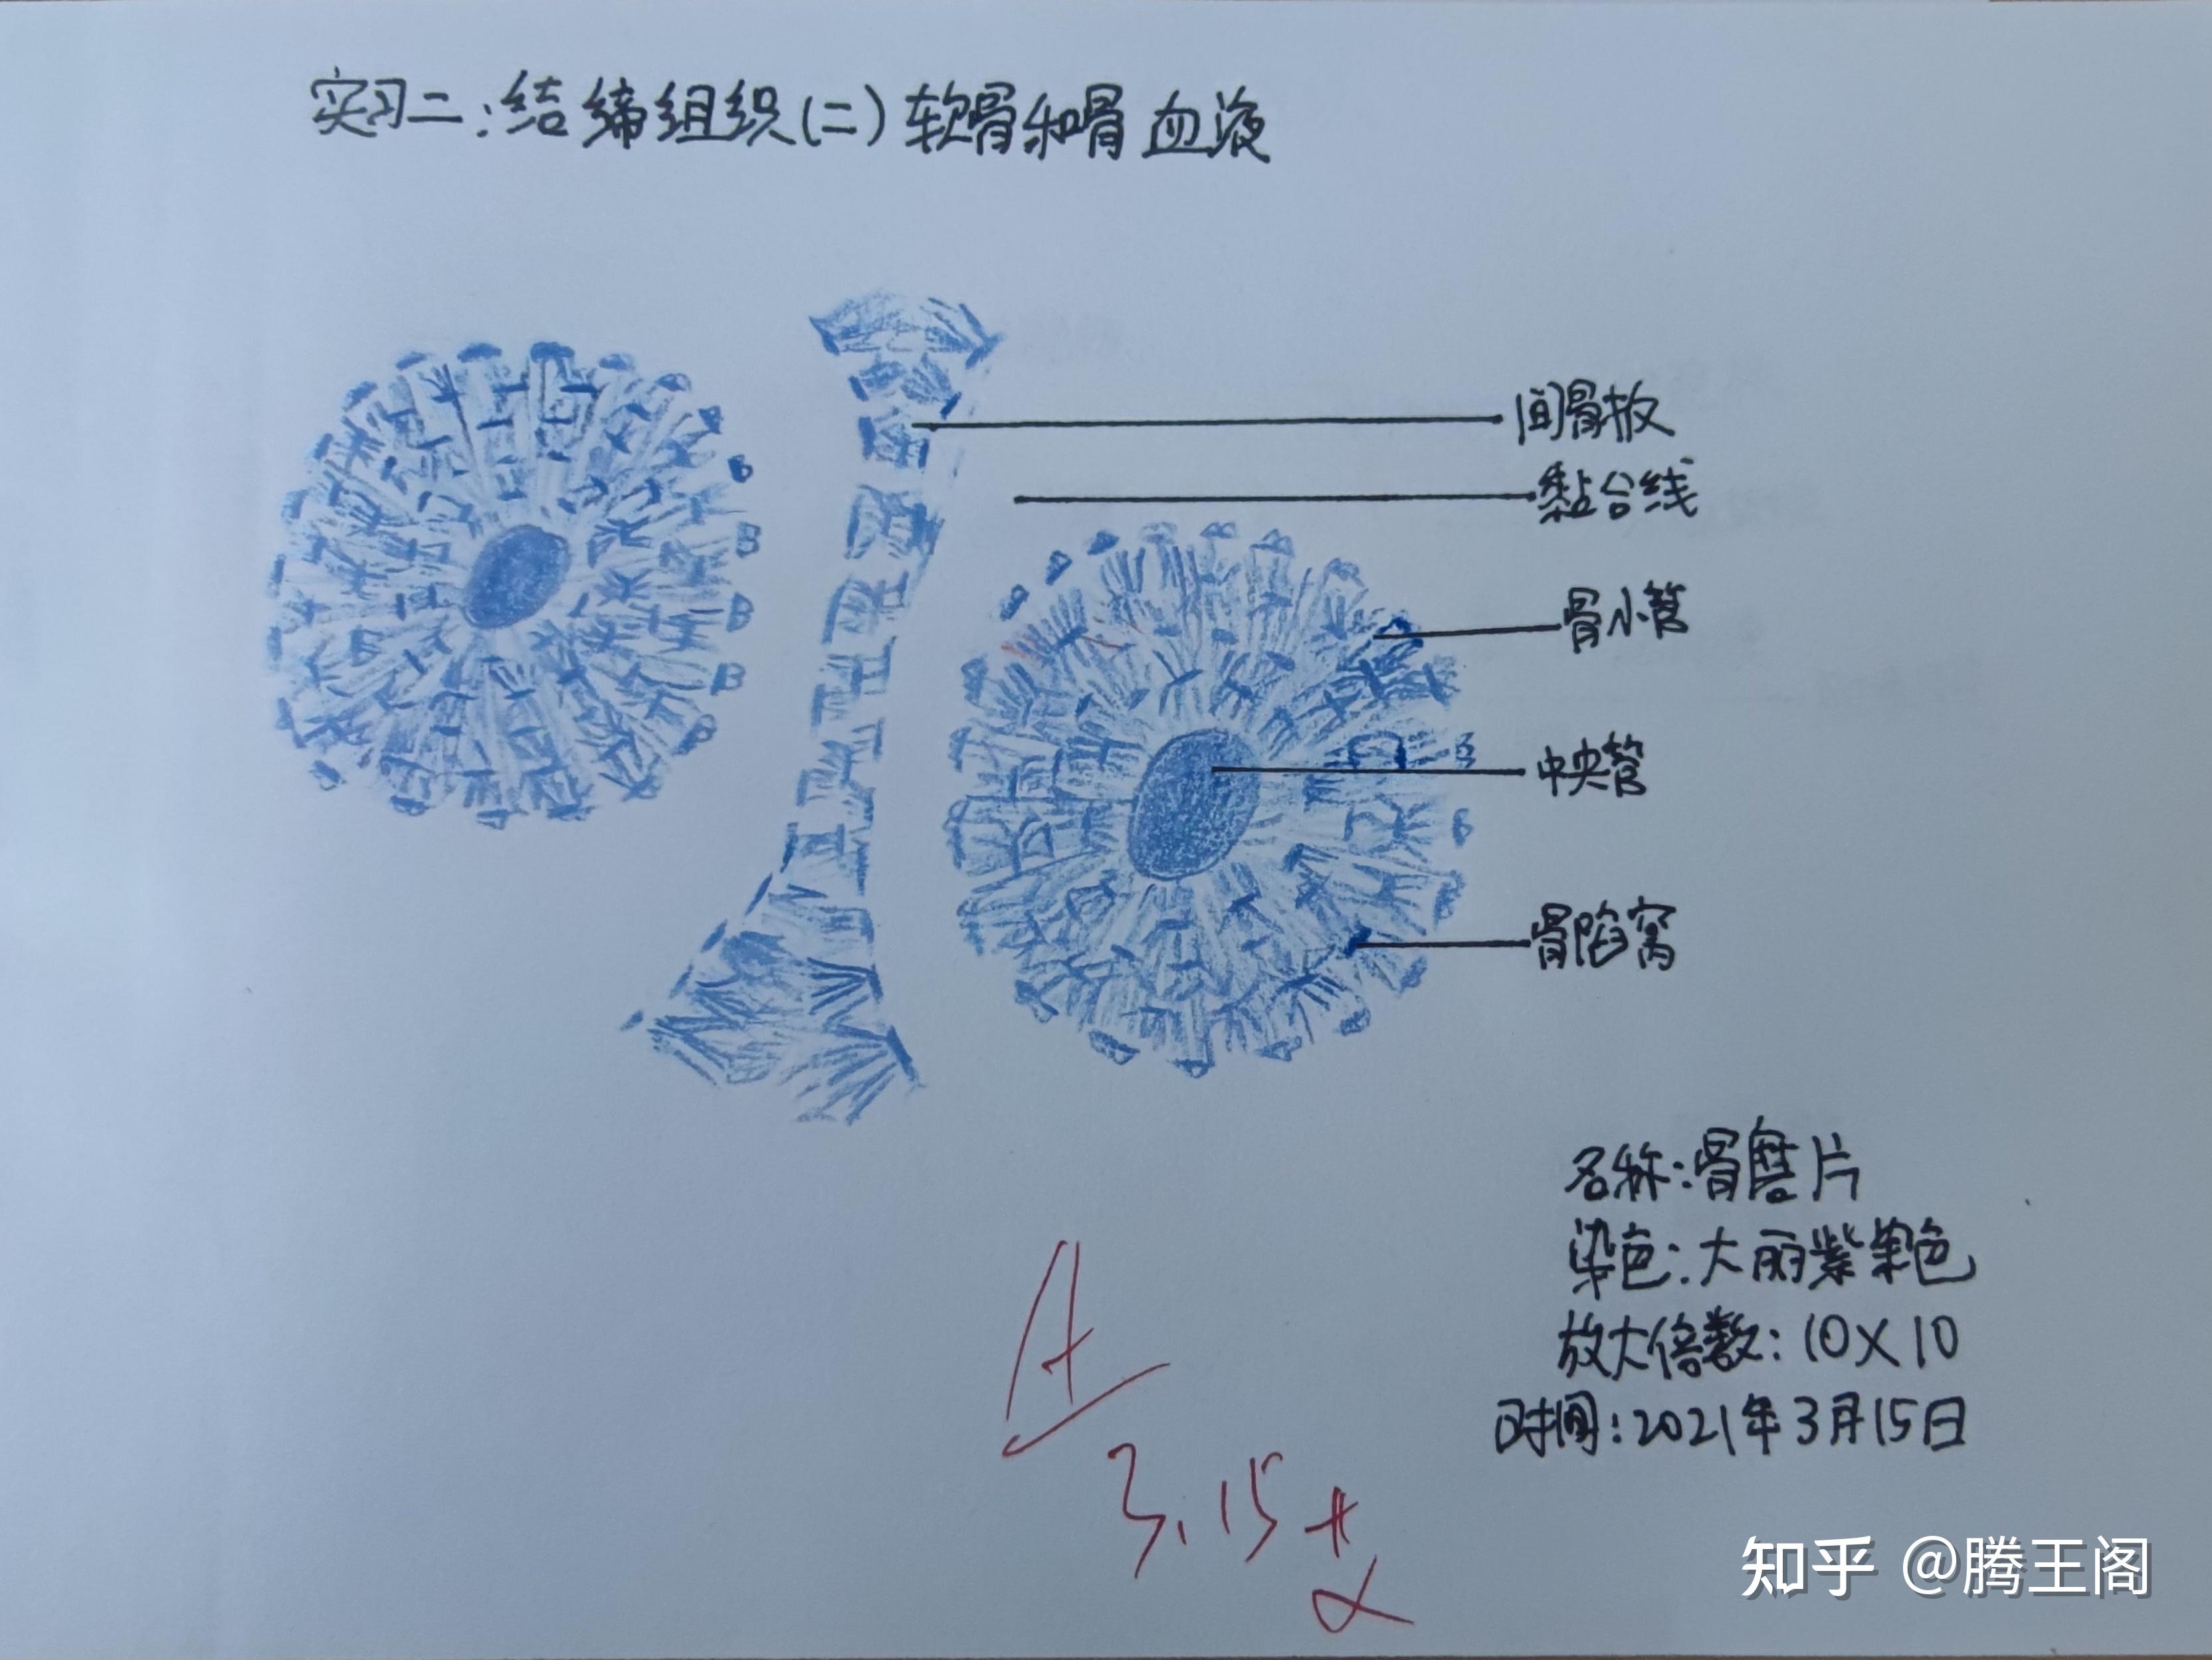 组织学与胚胎学实验画图作业——手绘图 